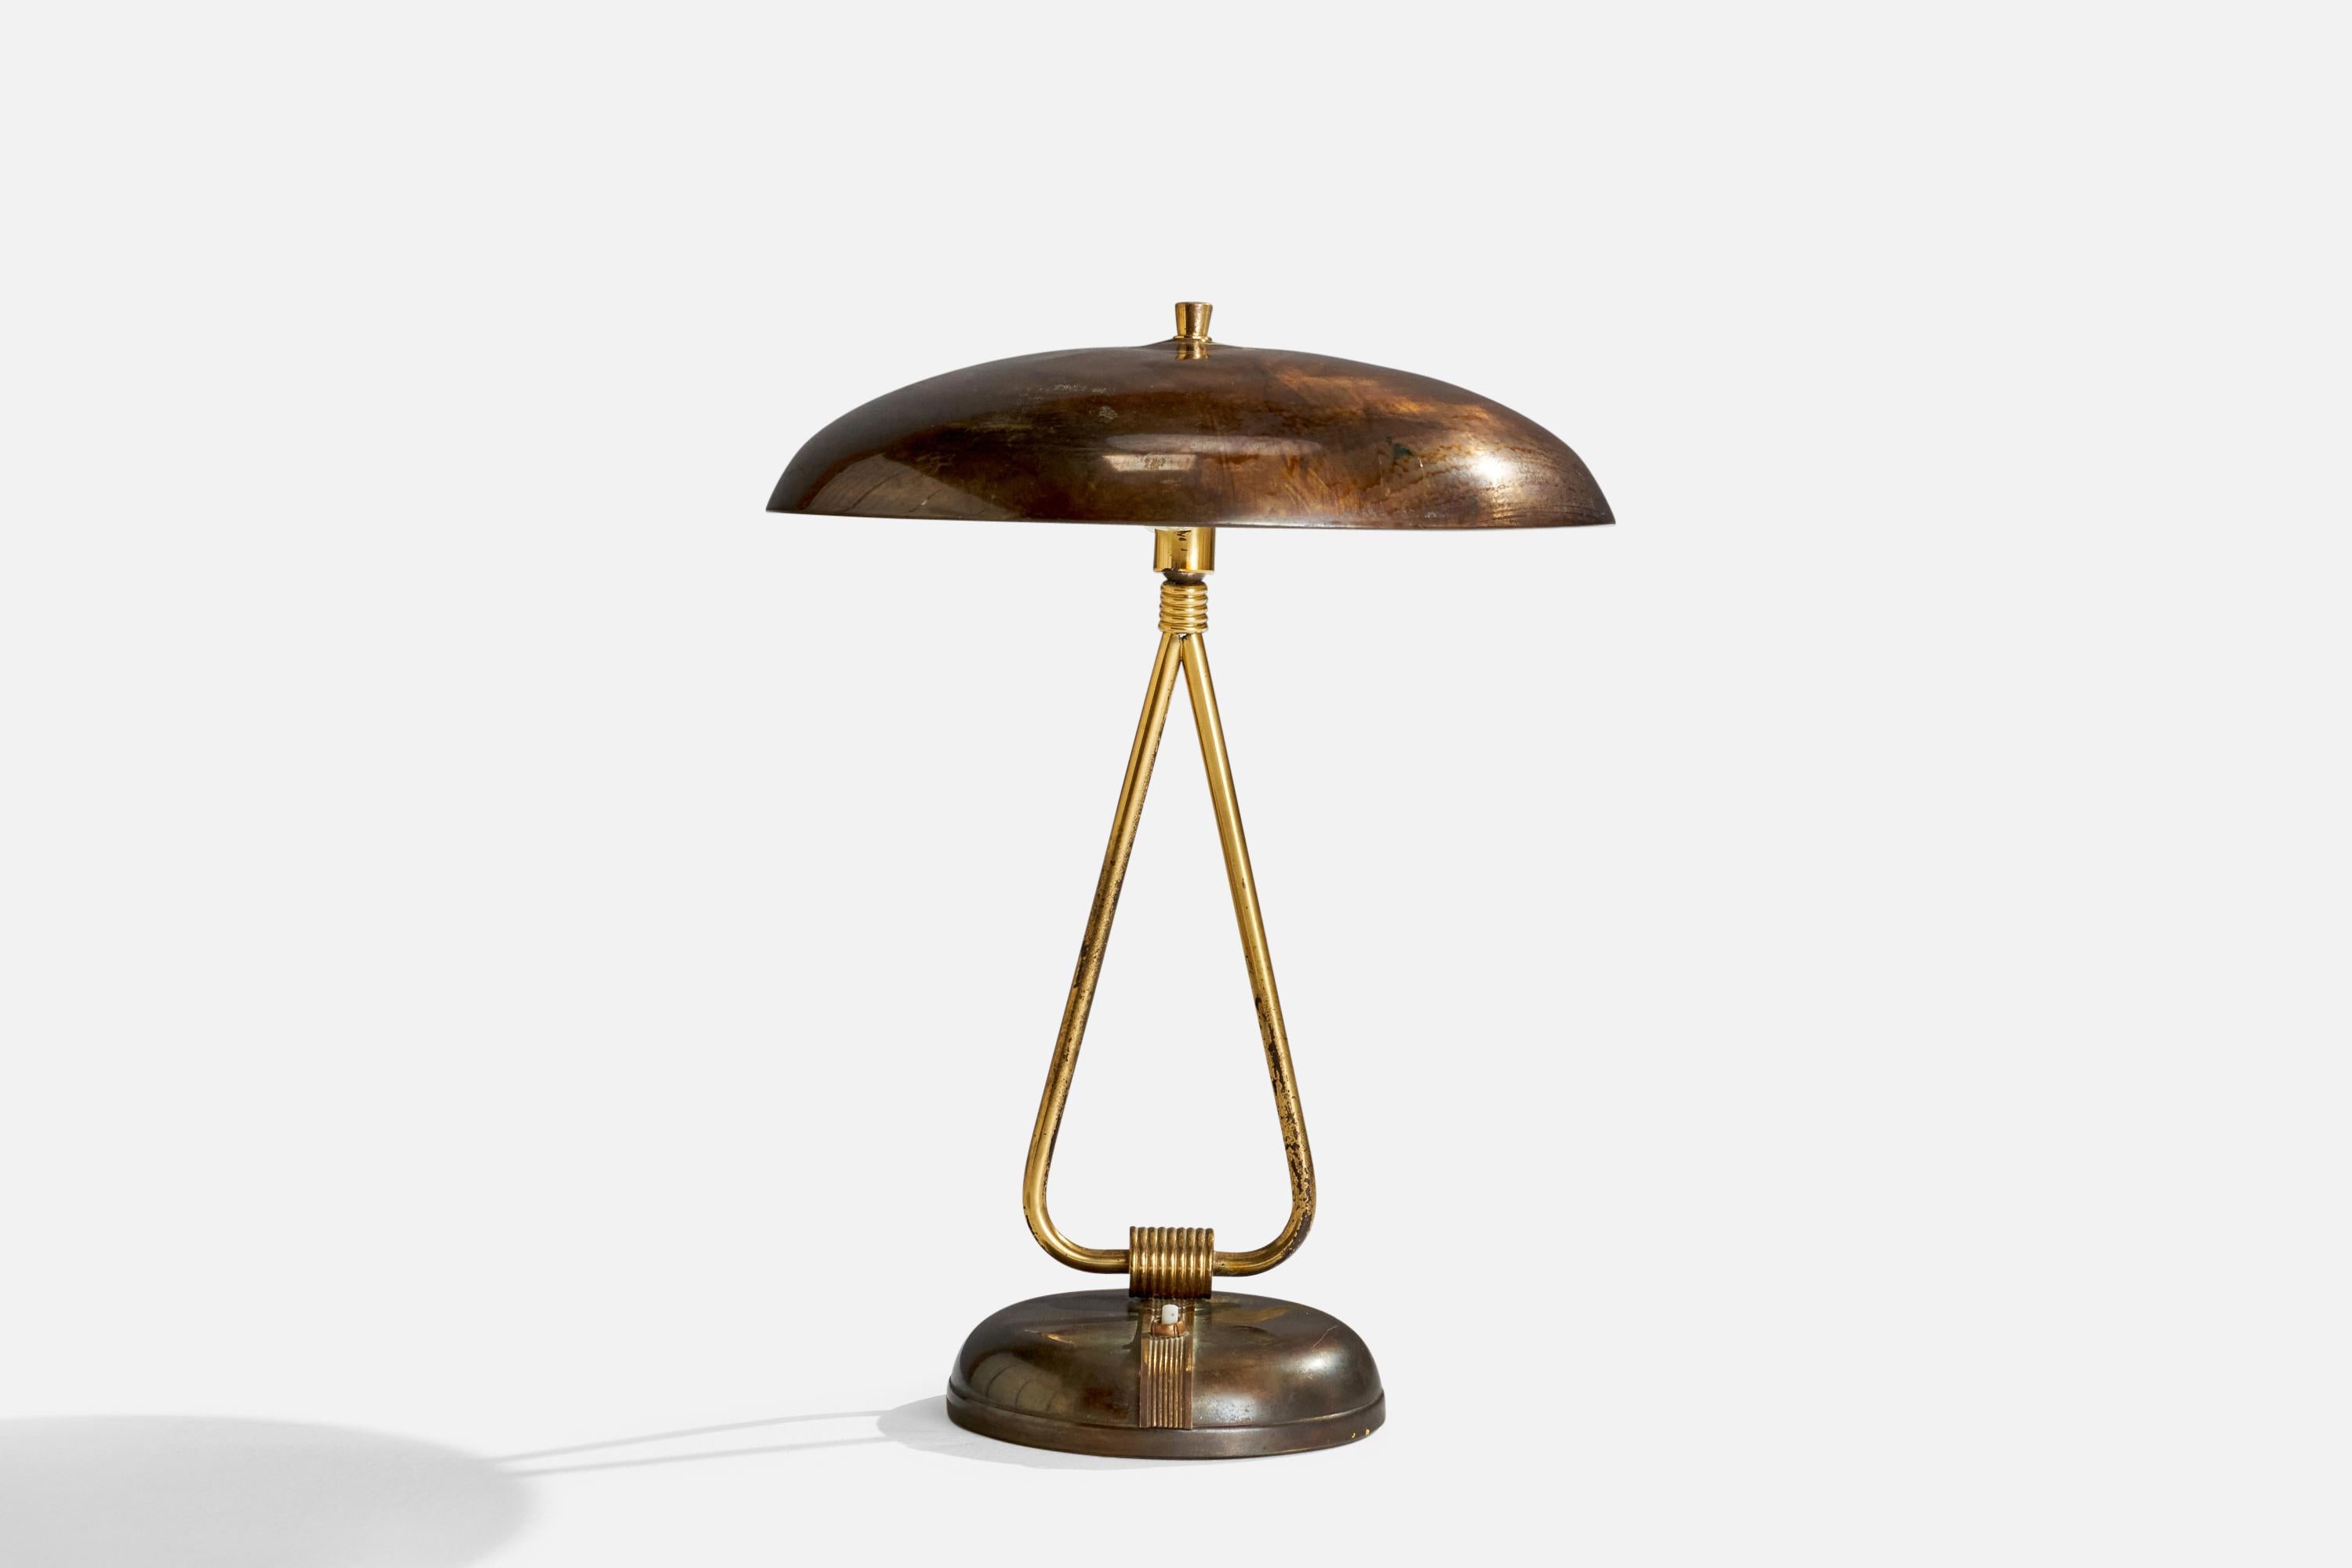 Lampe de table réglable en laiton, conçue et produite en Italie, années 1940.

Dimensions globales (pouces) : 17